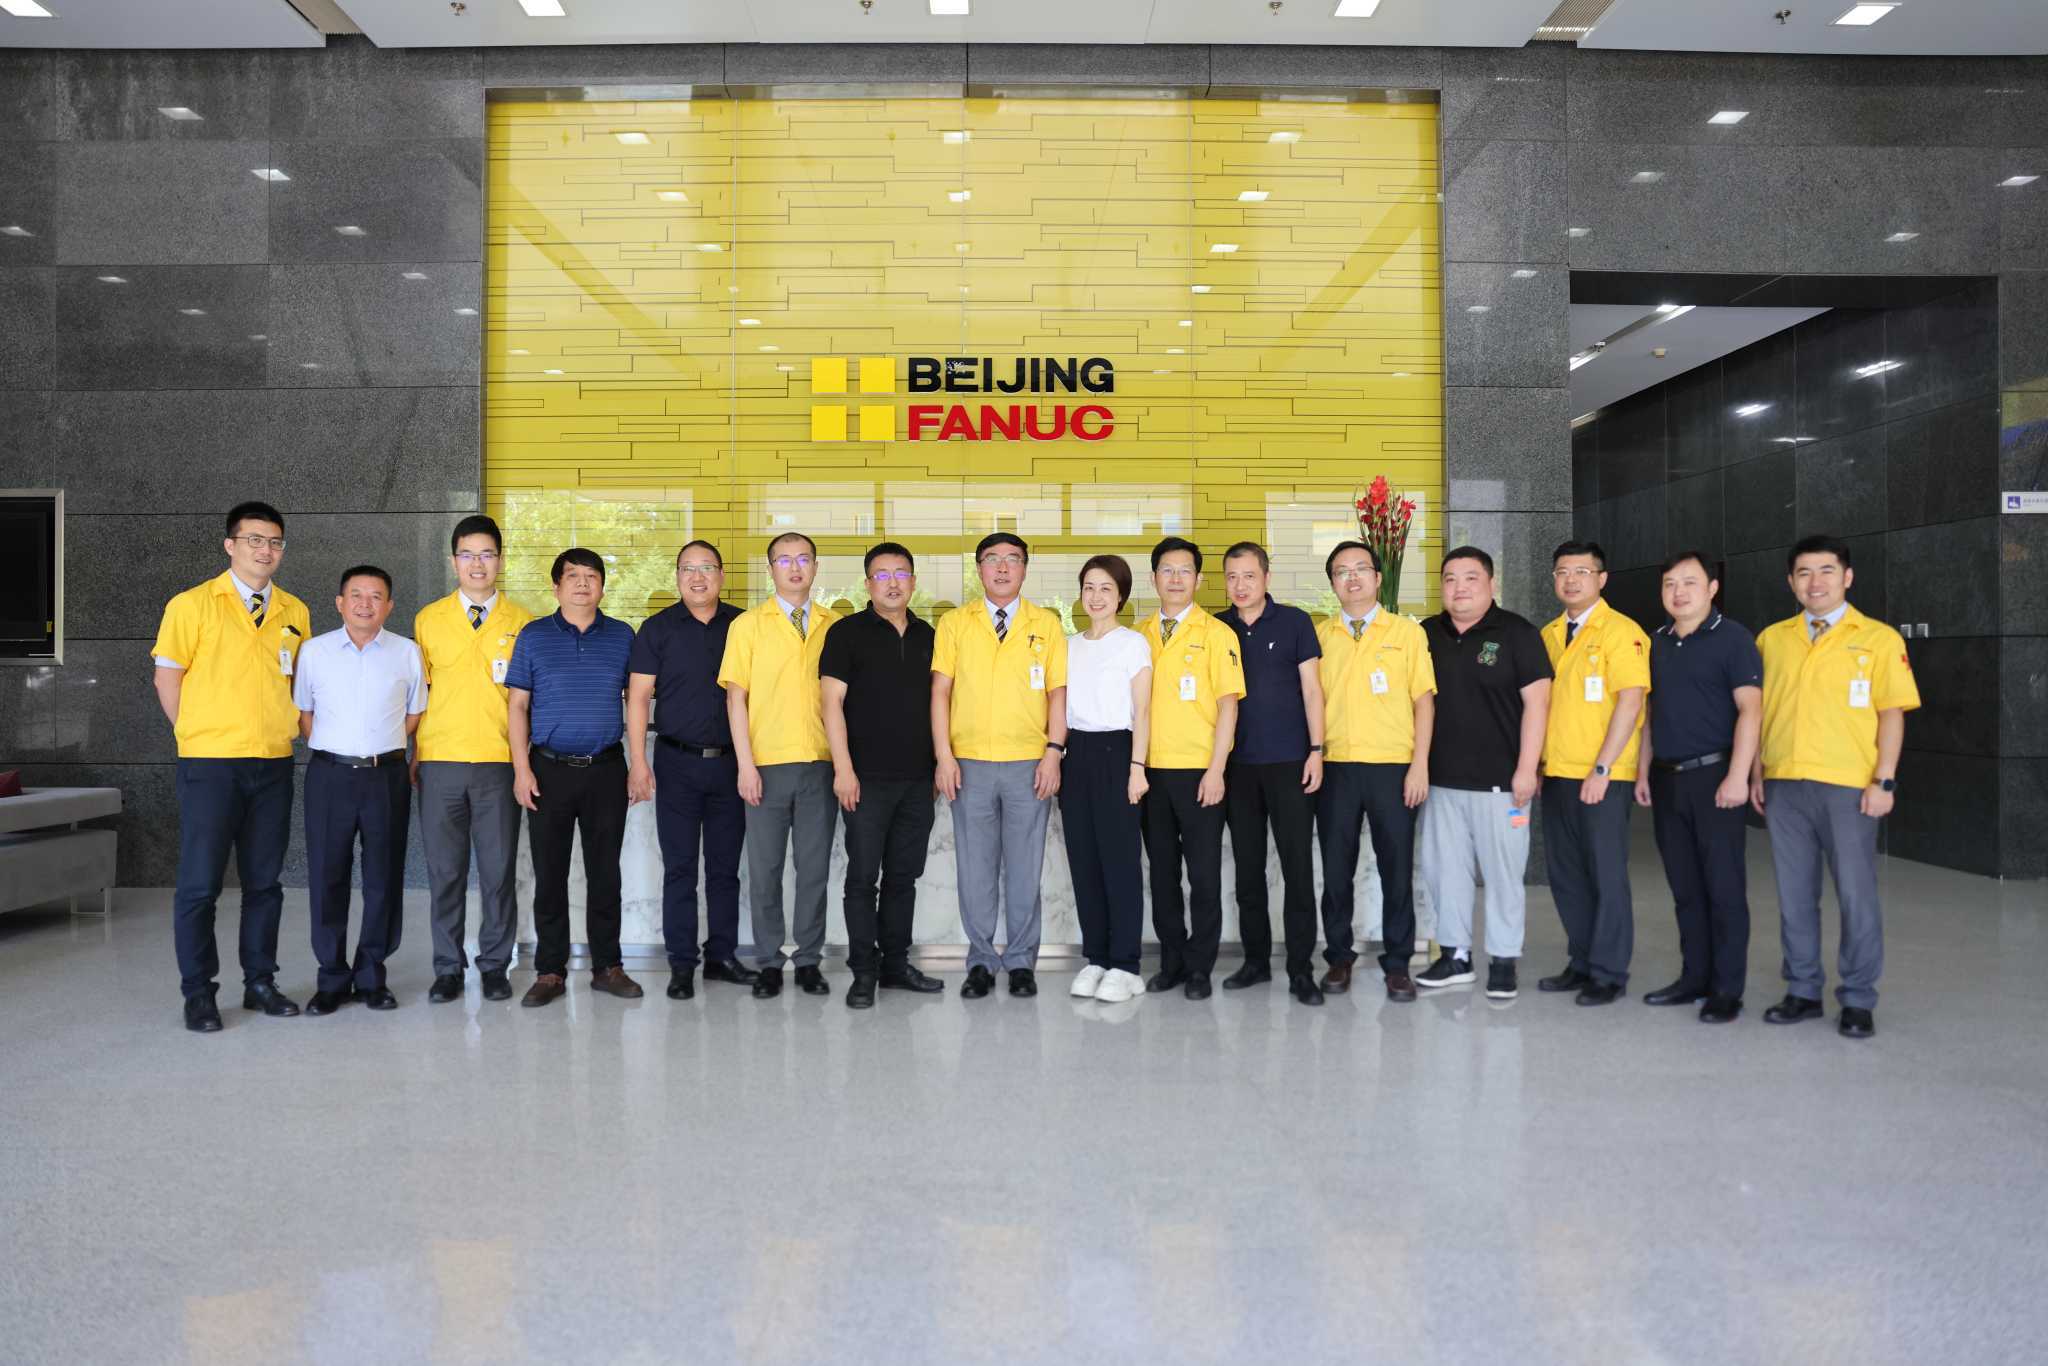 SINO senior management group visited Beijing Fanuc